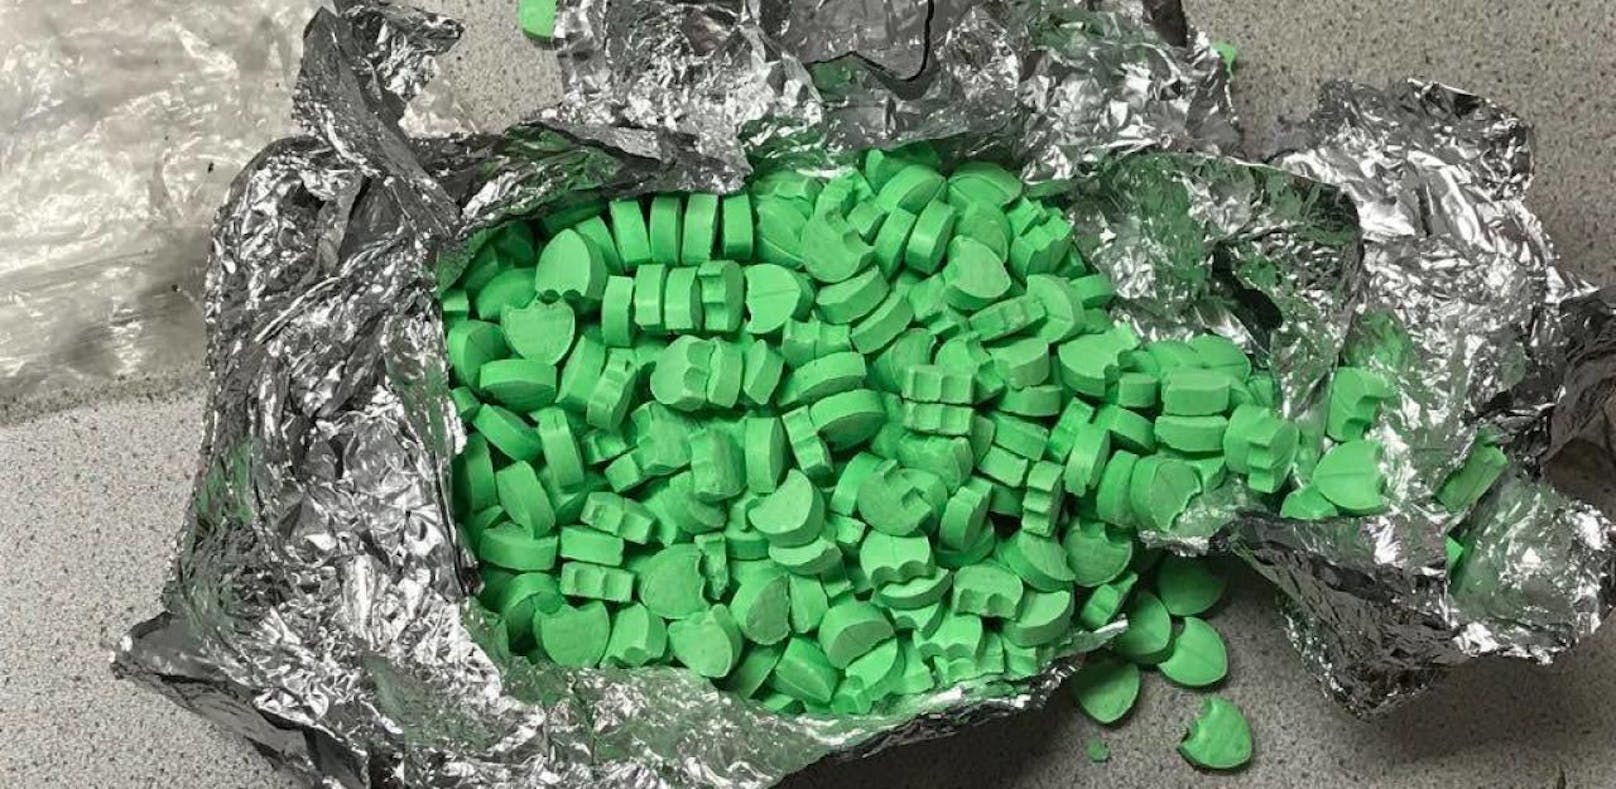 Fast 500 Ecstasy-Tabletten wurden in einem Park in Linz gefunden